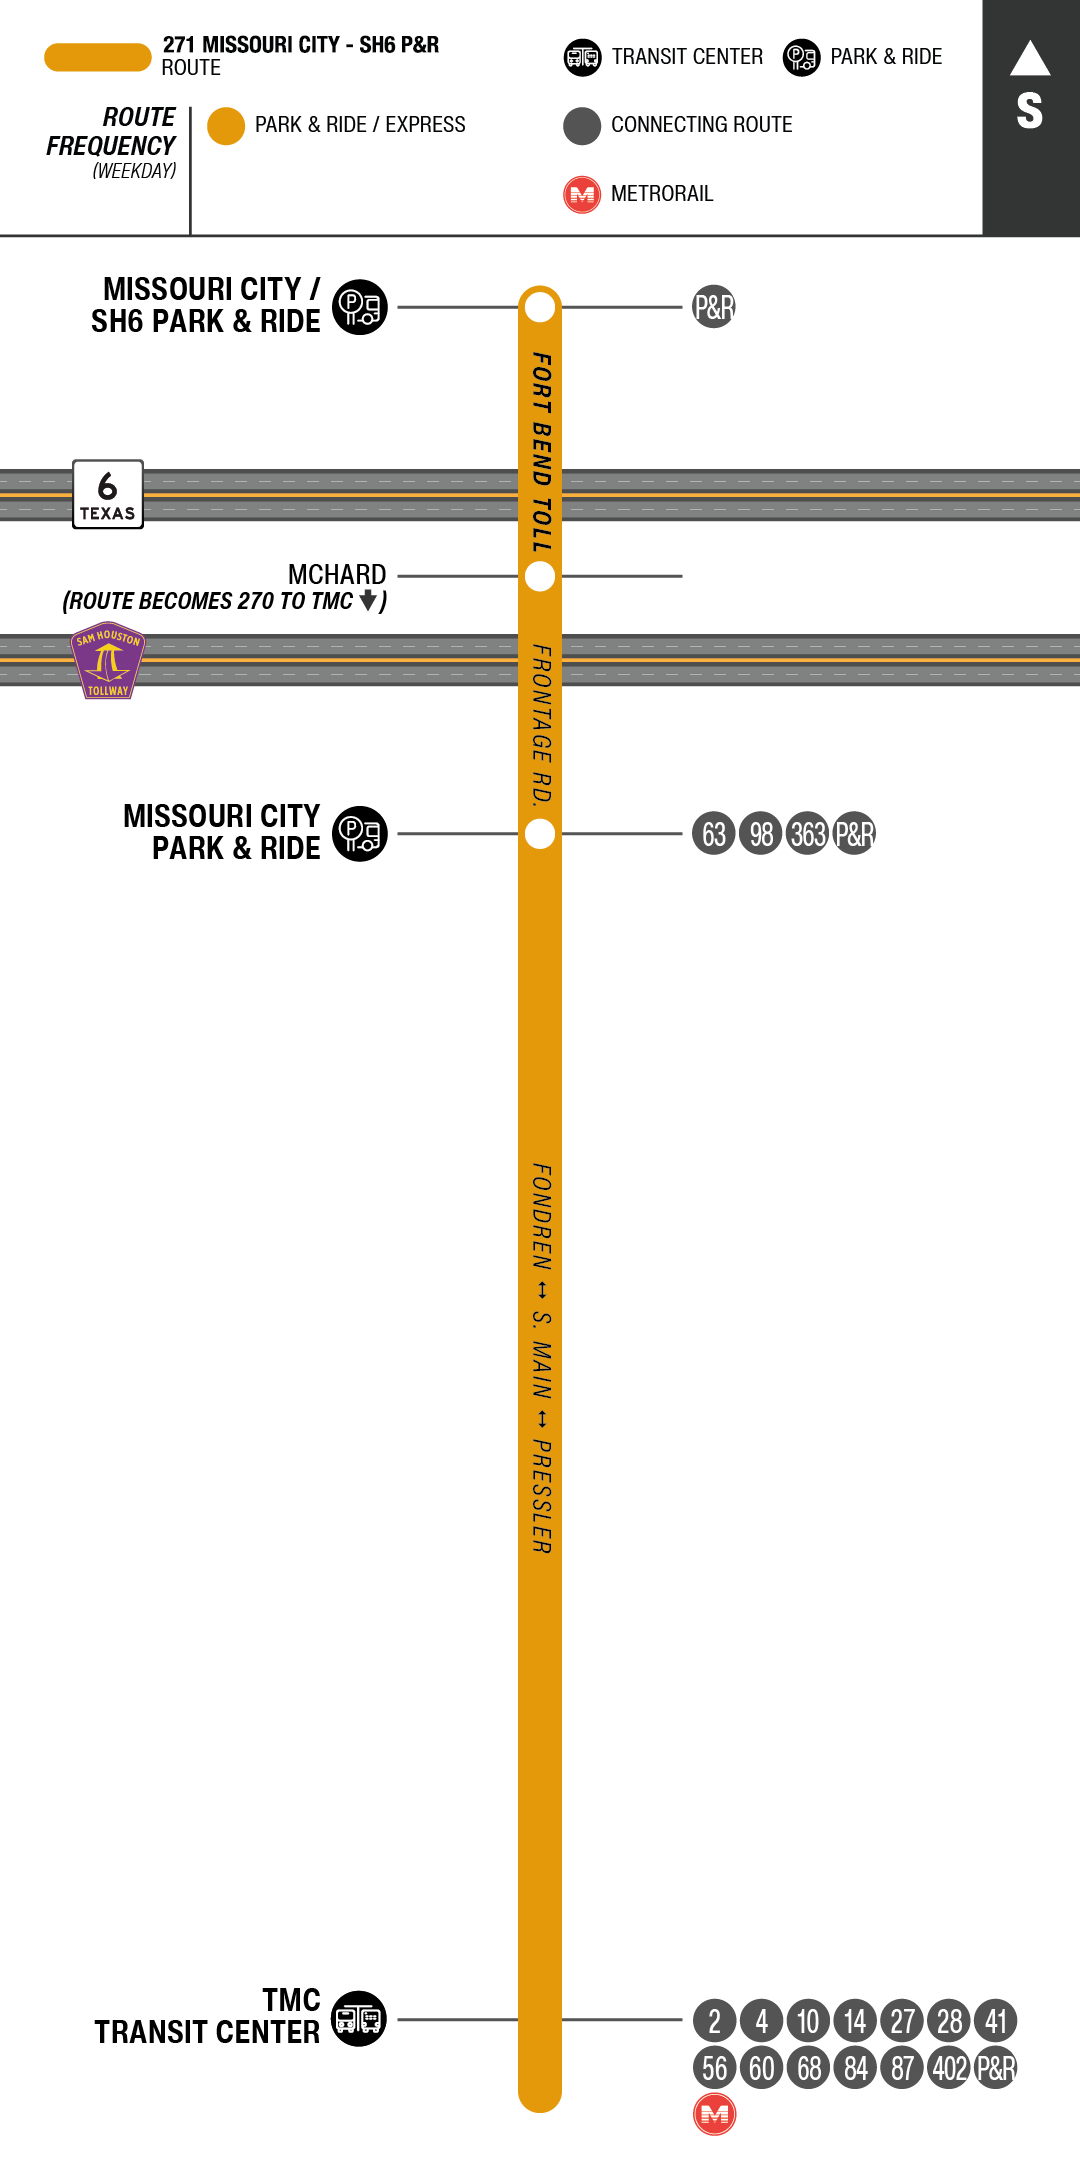 Route map for 271 Missouri City - SH6 Park & Ride bus